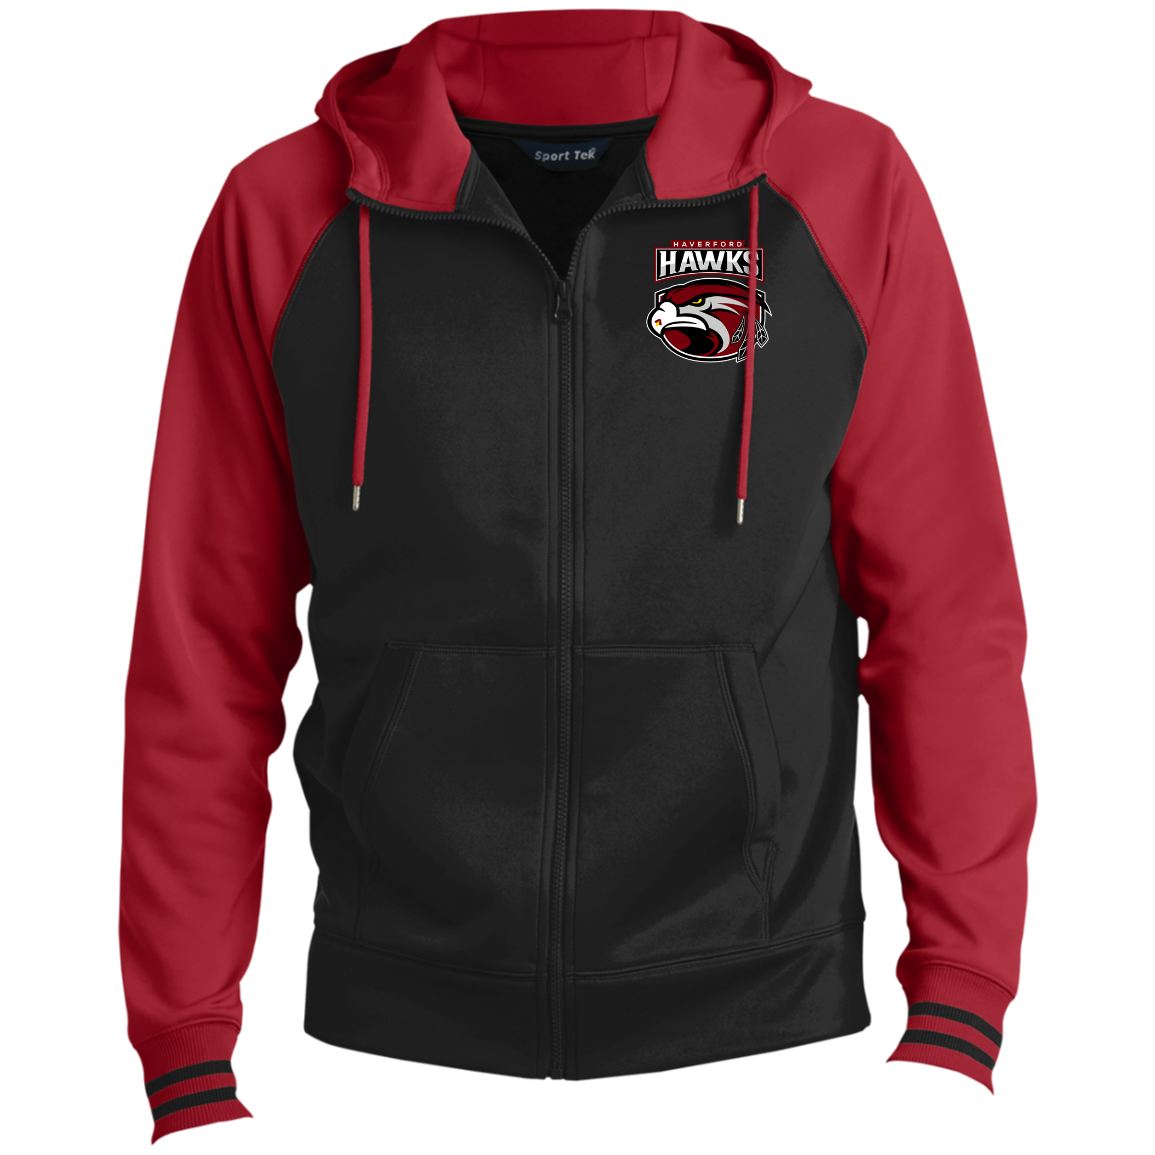 Hawks Men's Sport-Wick® Full-Zip Hooded Jacket